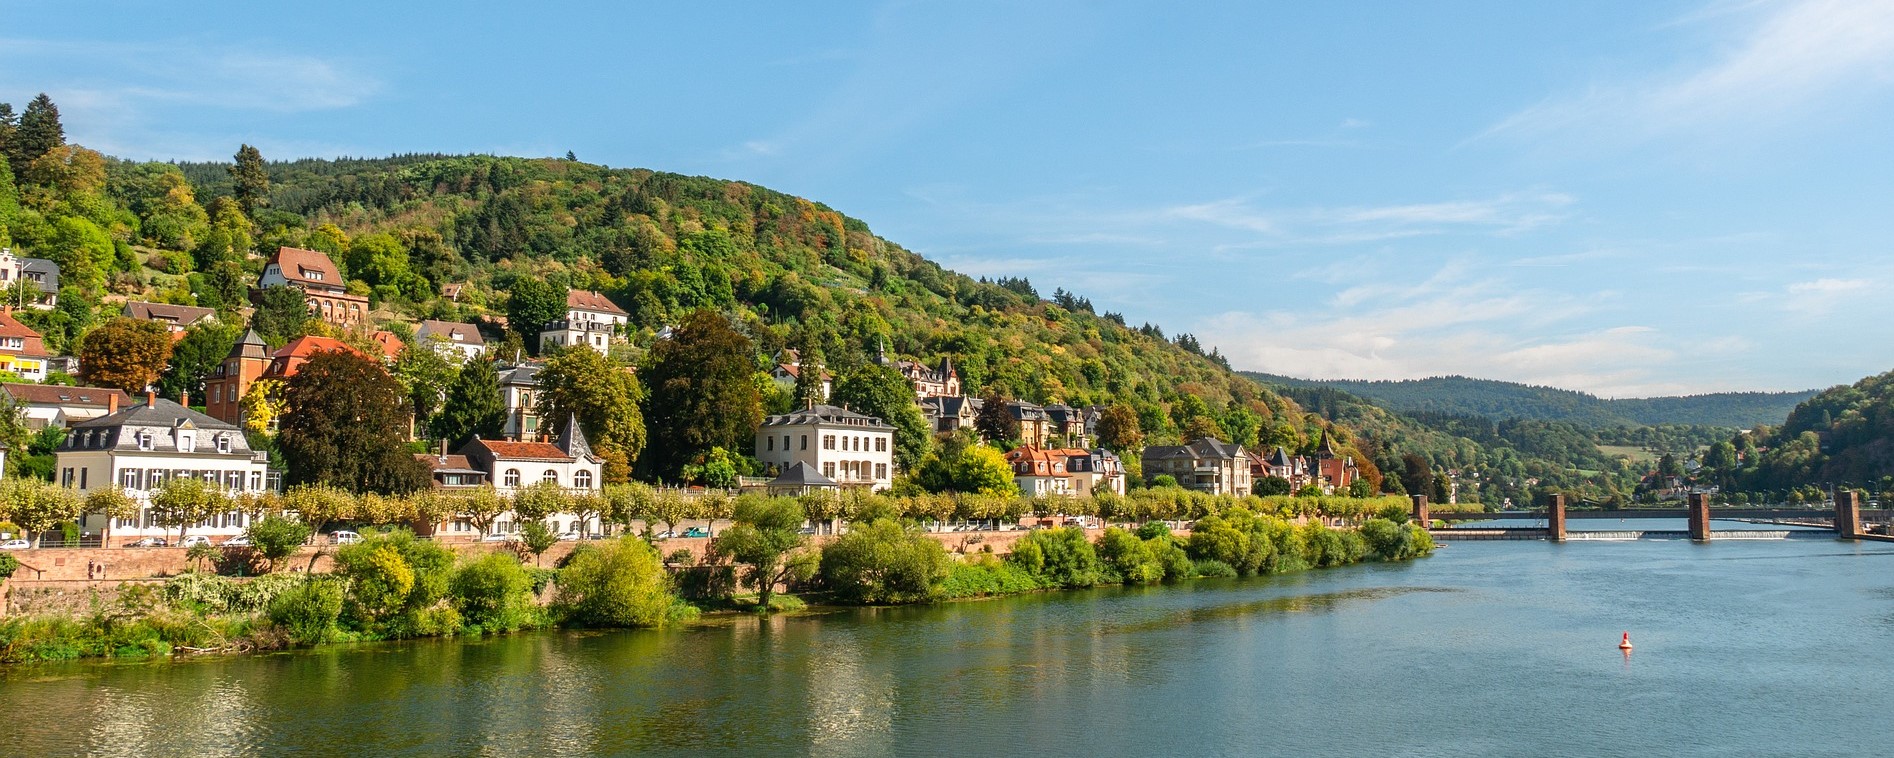 Heidelberg Deutschland